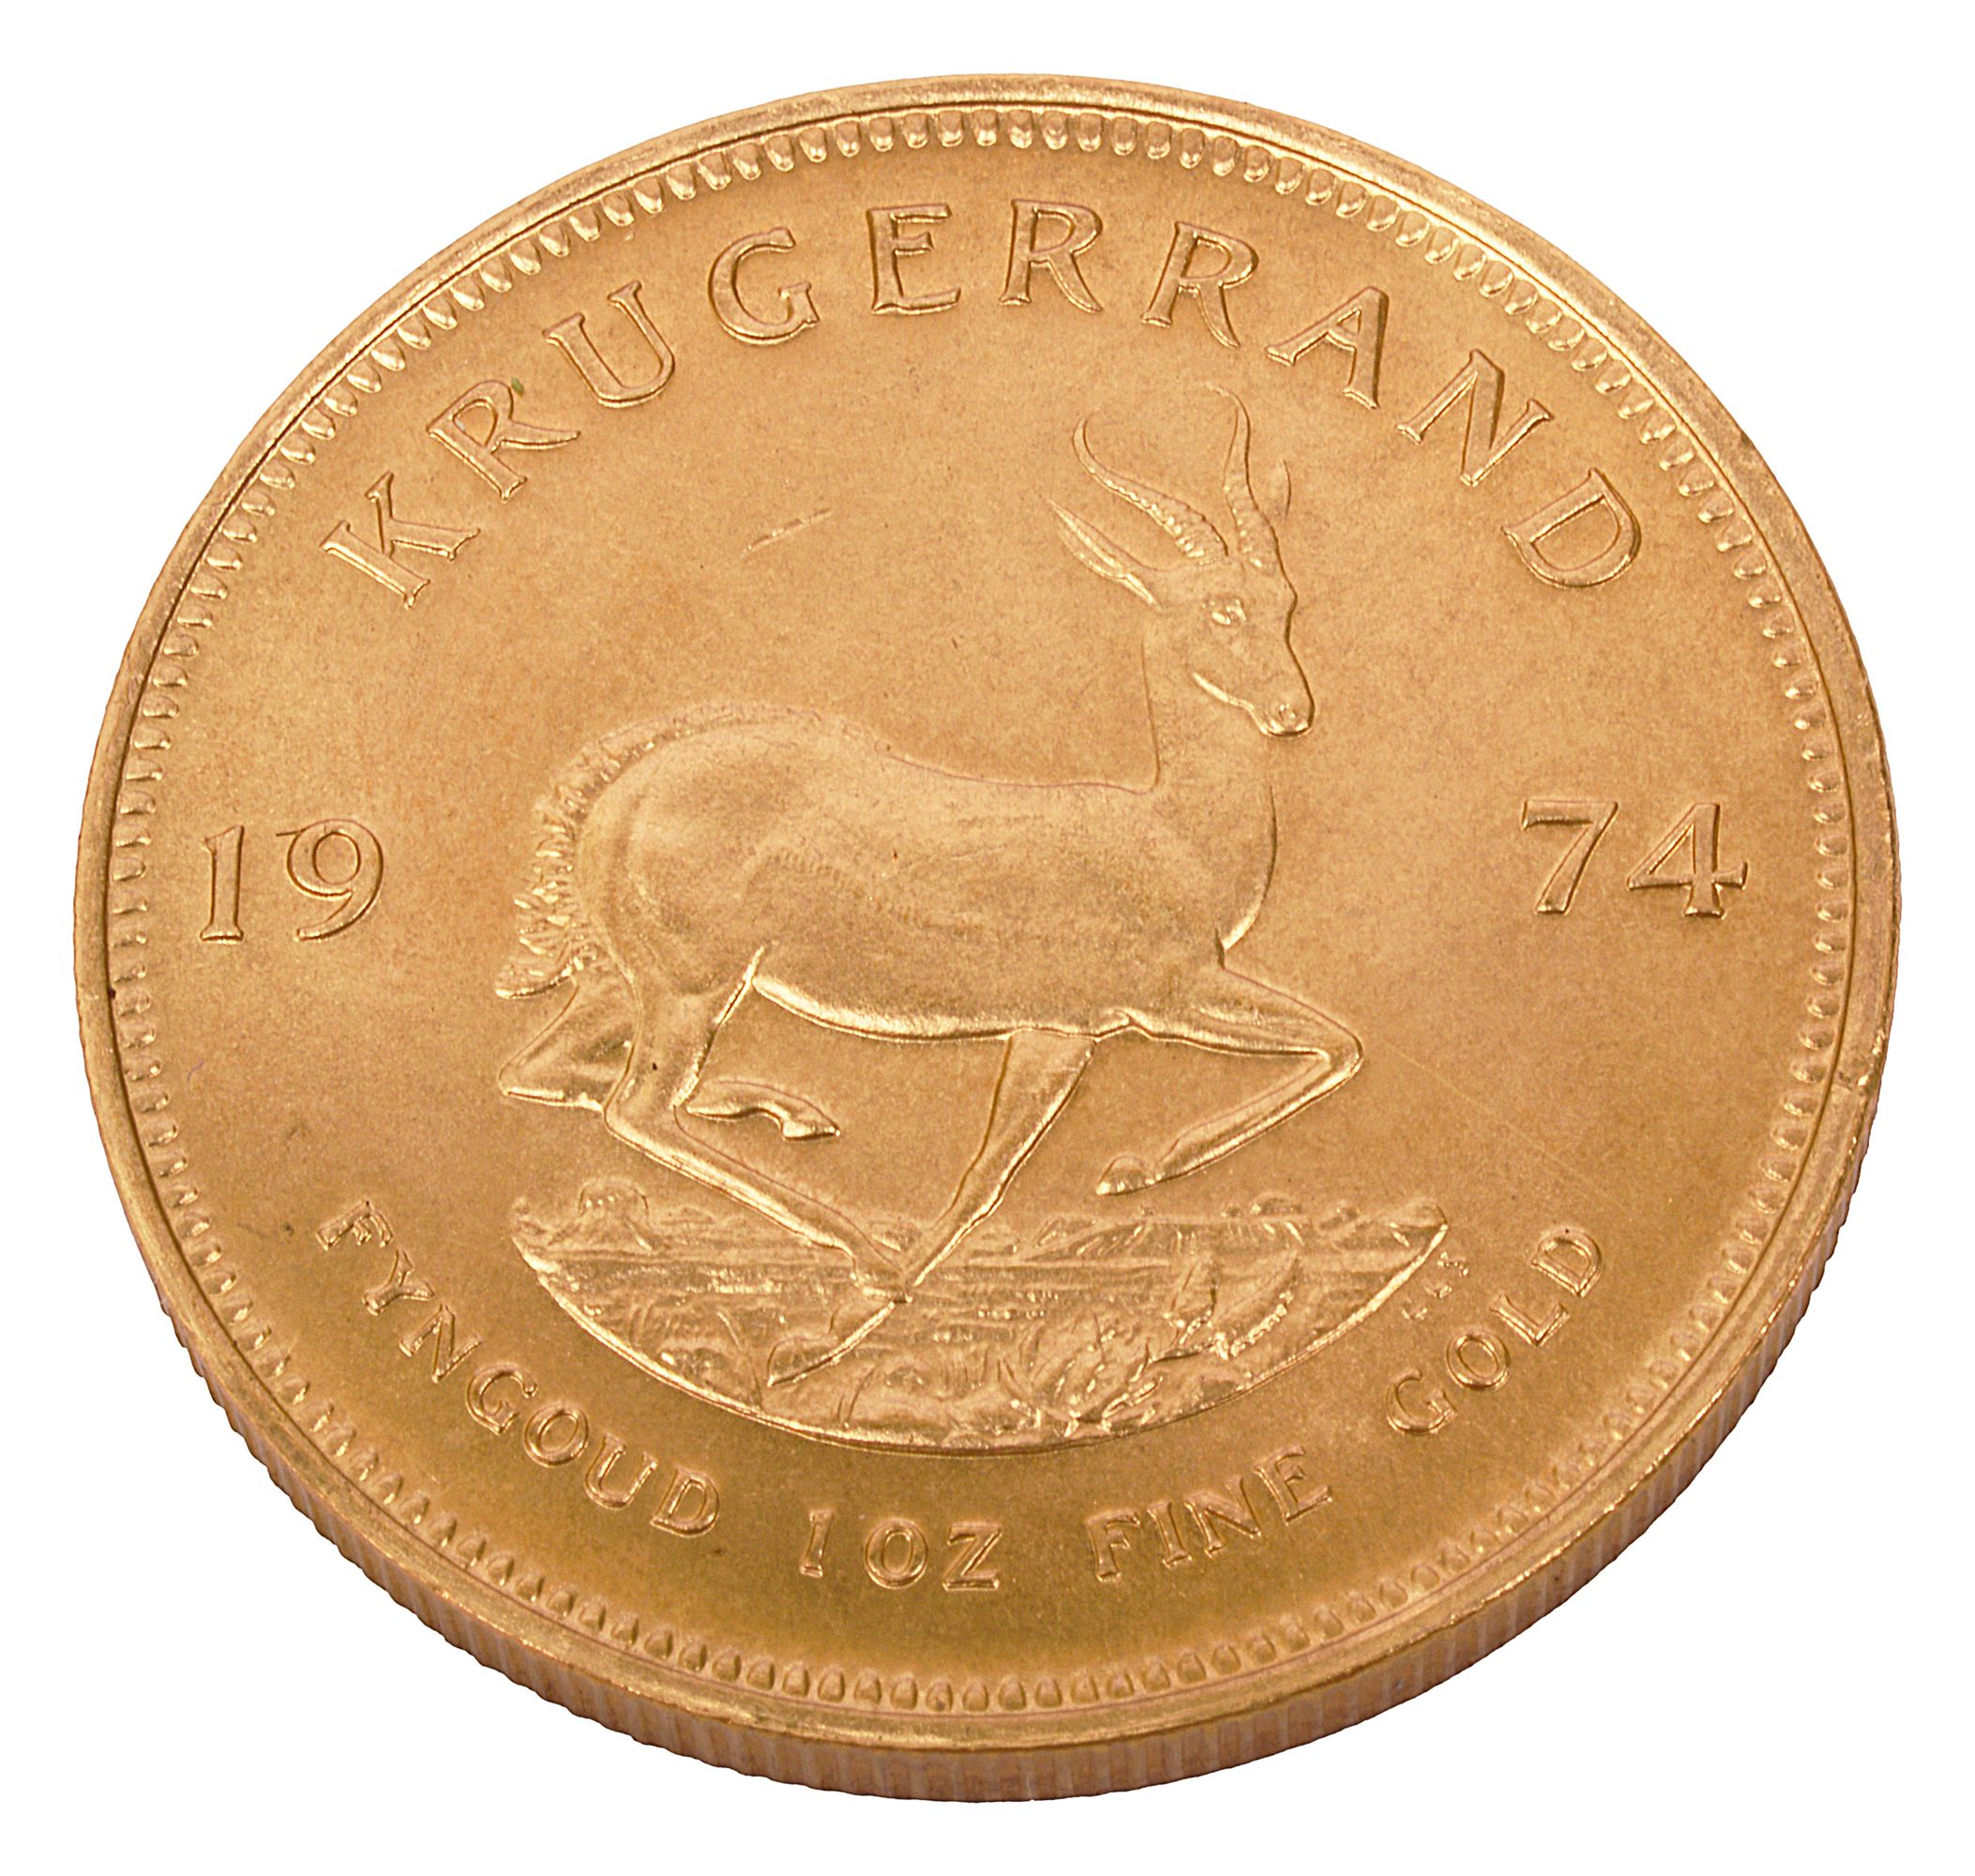 South Africa 1oz fine gold Krugerrand, 1974 - Image 2 of 2